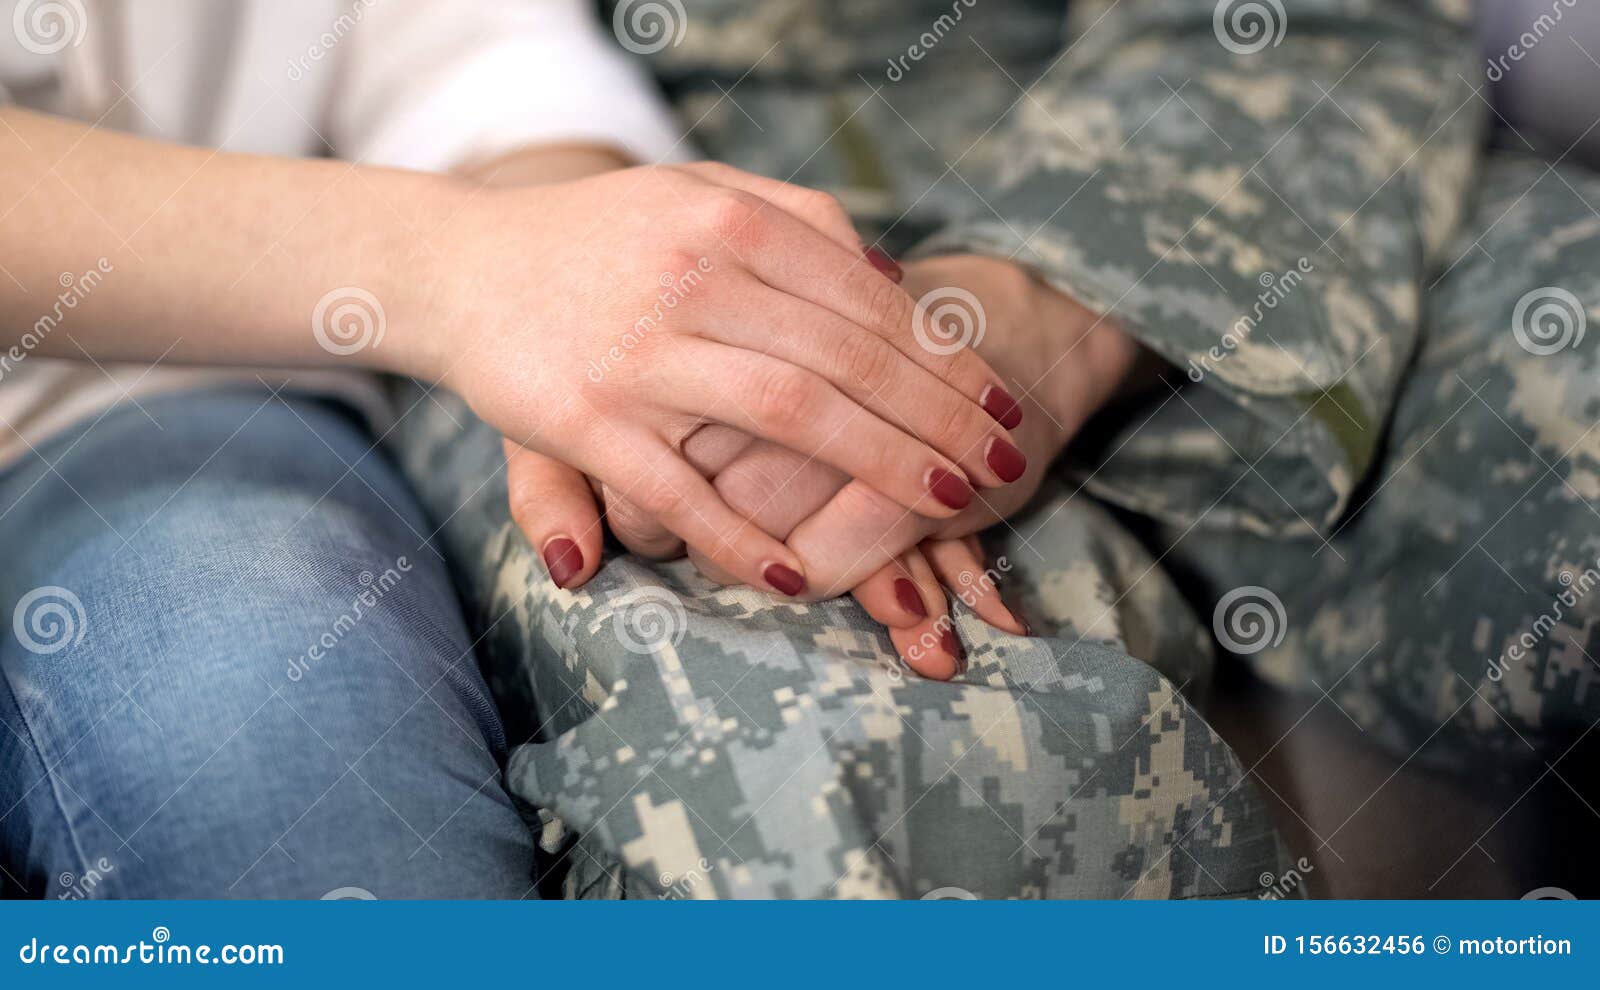 Девушка И Парень Военный Фото